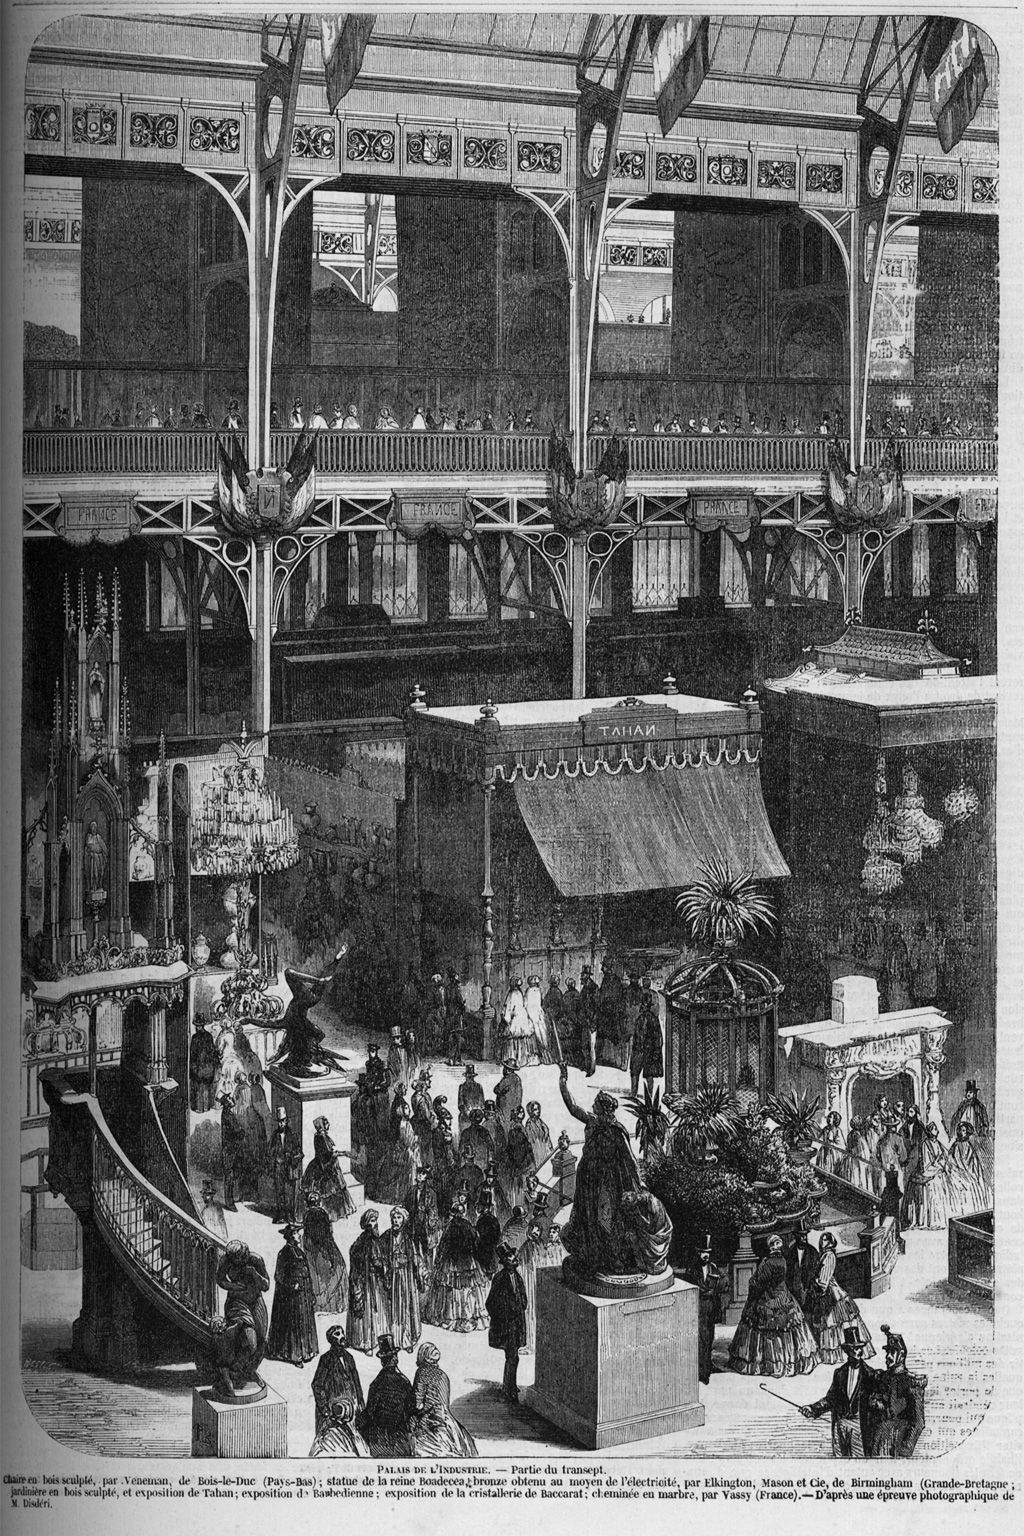 バカラのシャンデリア展示場(1855年)